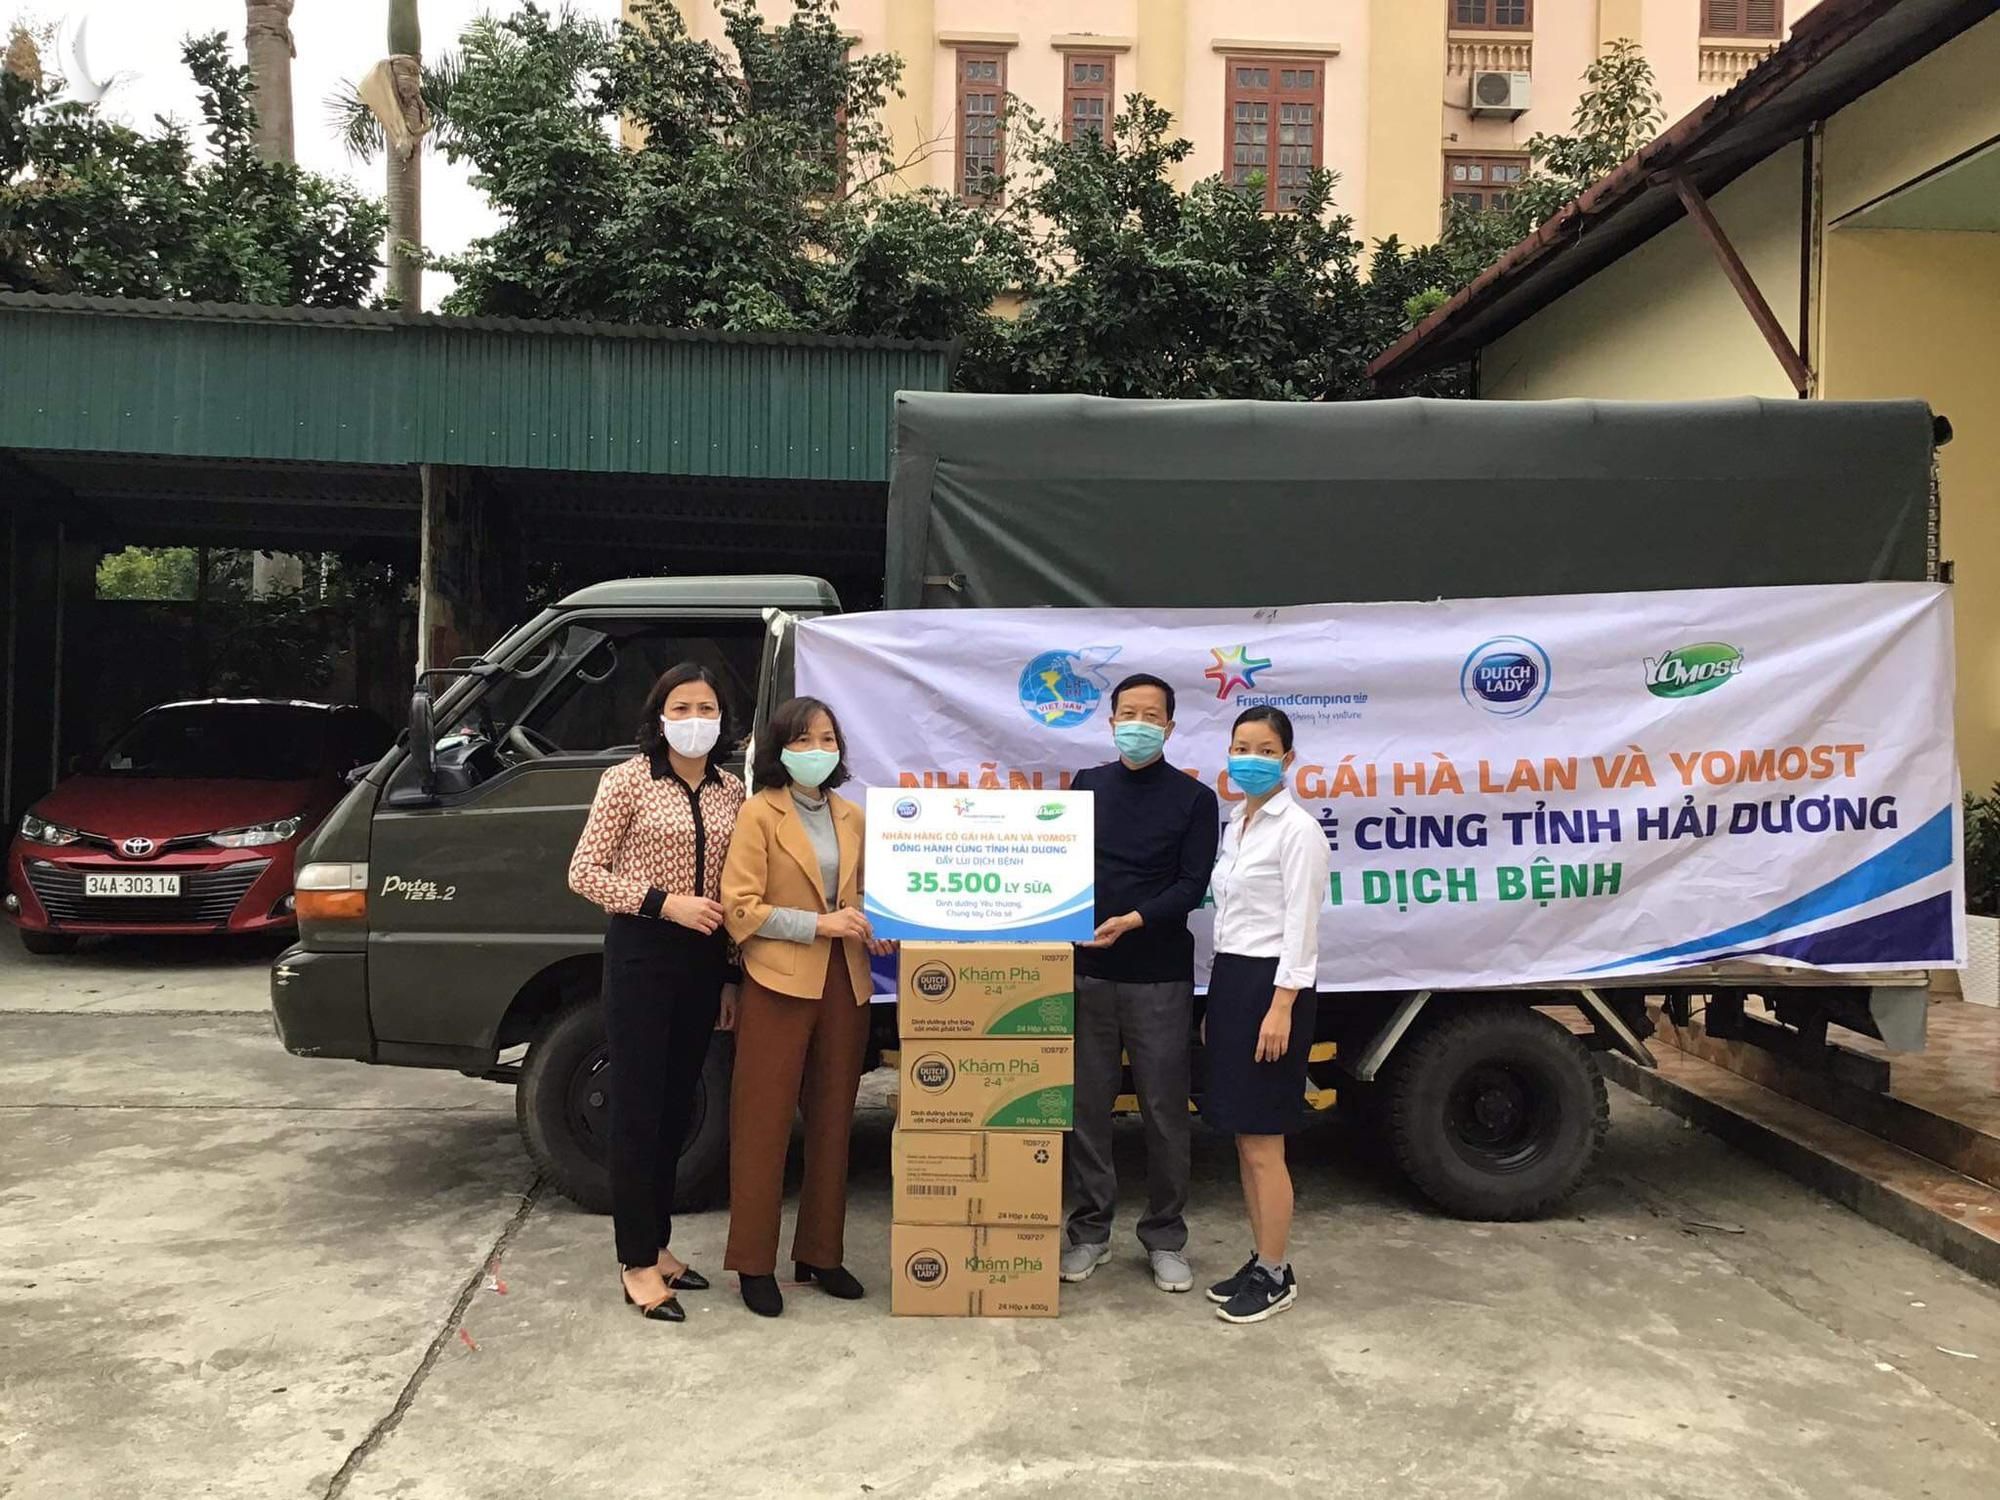 Gần 40.000 đơn vị sữa đang được trao gửi đến các y bác sĩ tuyến đầu và người dân tại các khu vực cách ly ở tỉnh Hải Dương